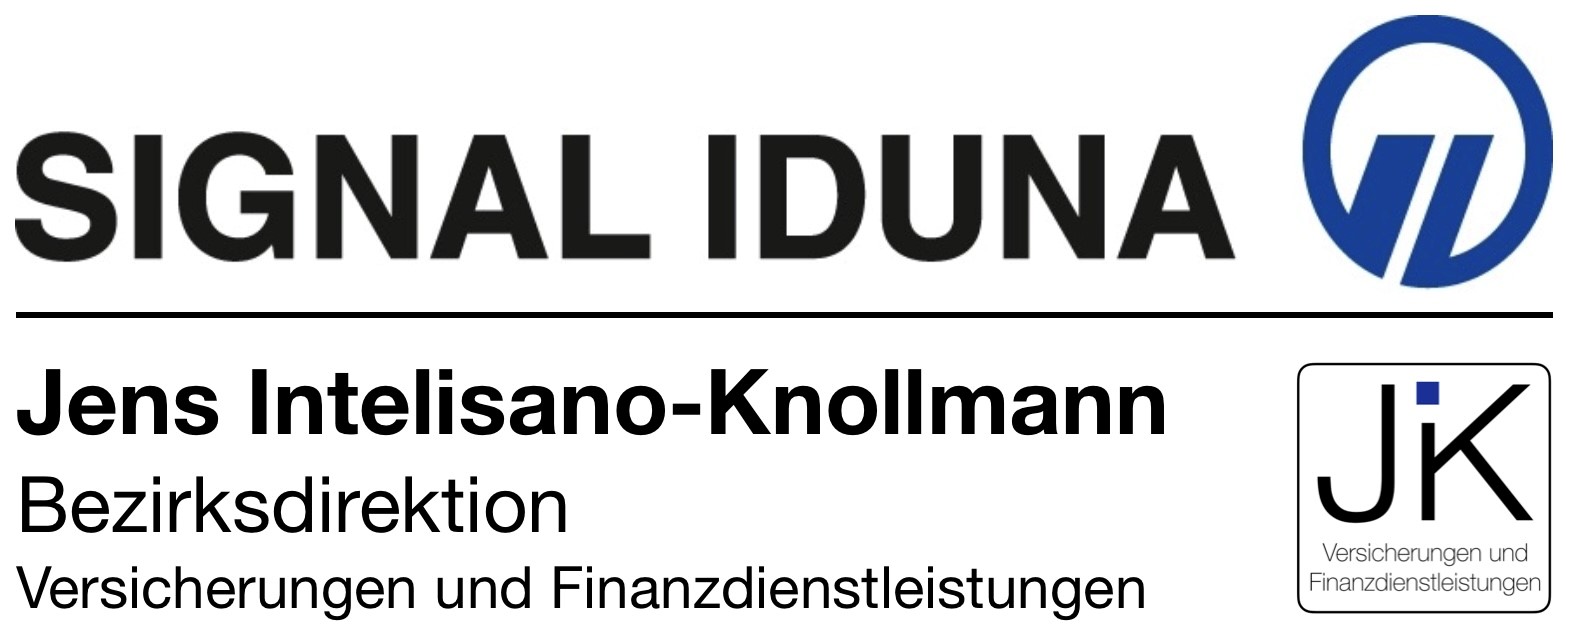 Bilder SIGNAL IDUNA Versicherung Jens Intelisano-Knollmann